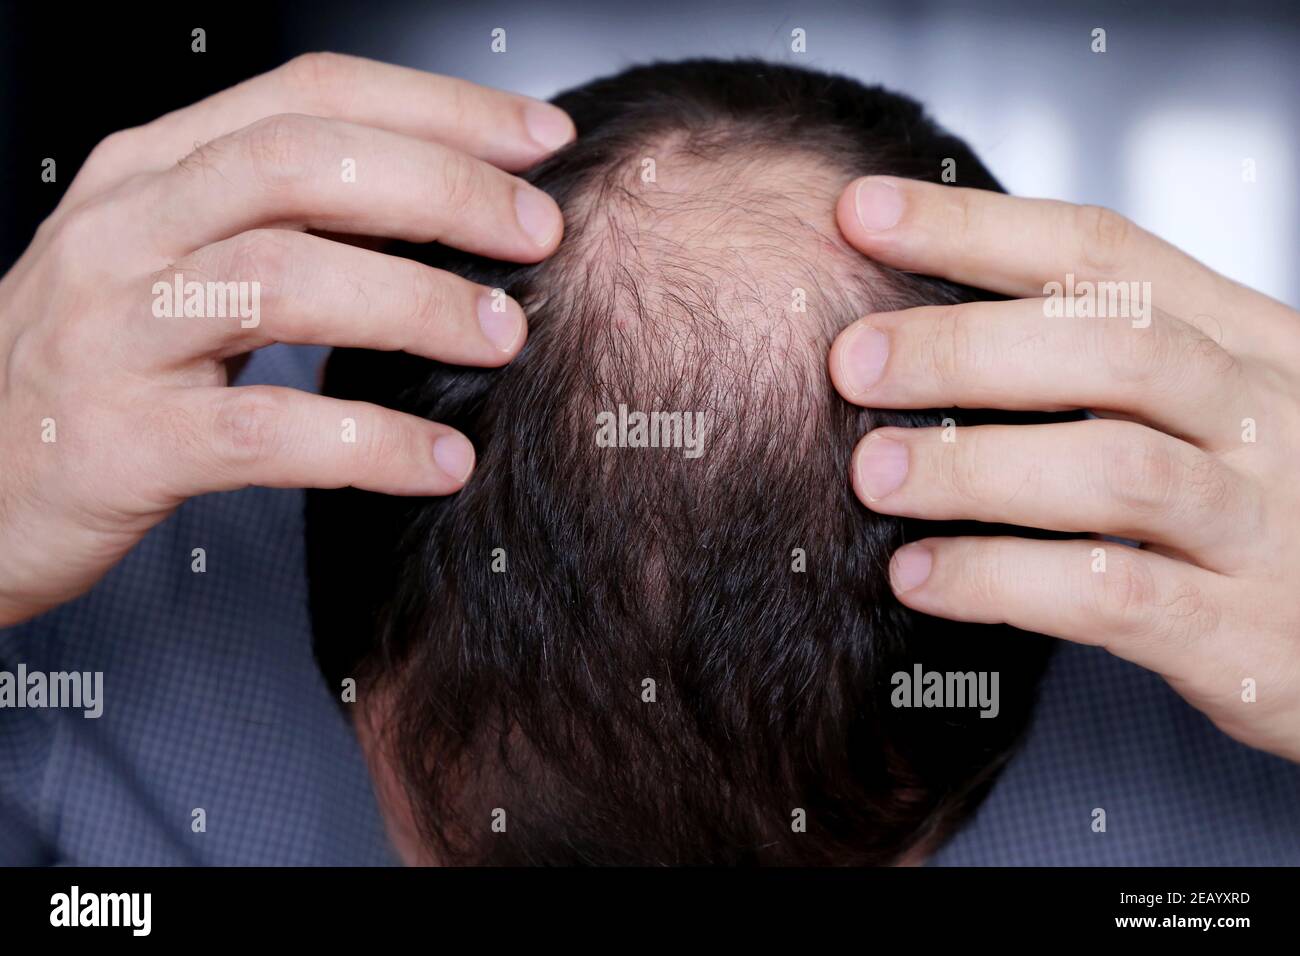 Kahlheit, Mann besorgt über Haarausfall. Männlicher Kopf mit einer Glatze Stockfoto